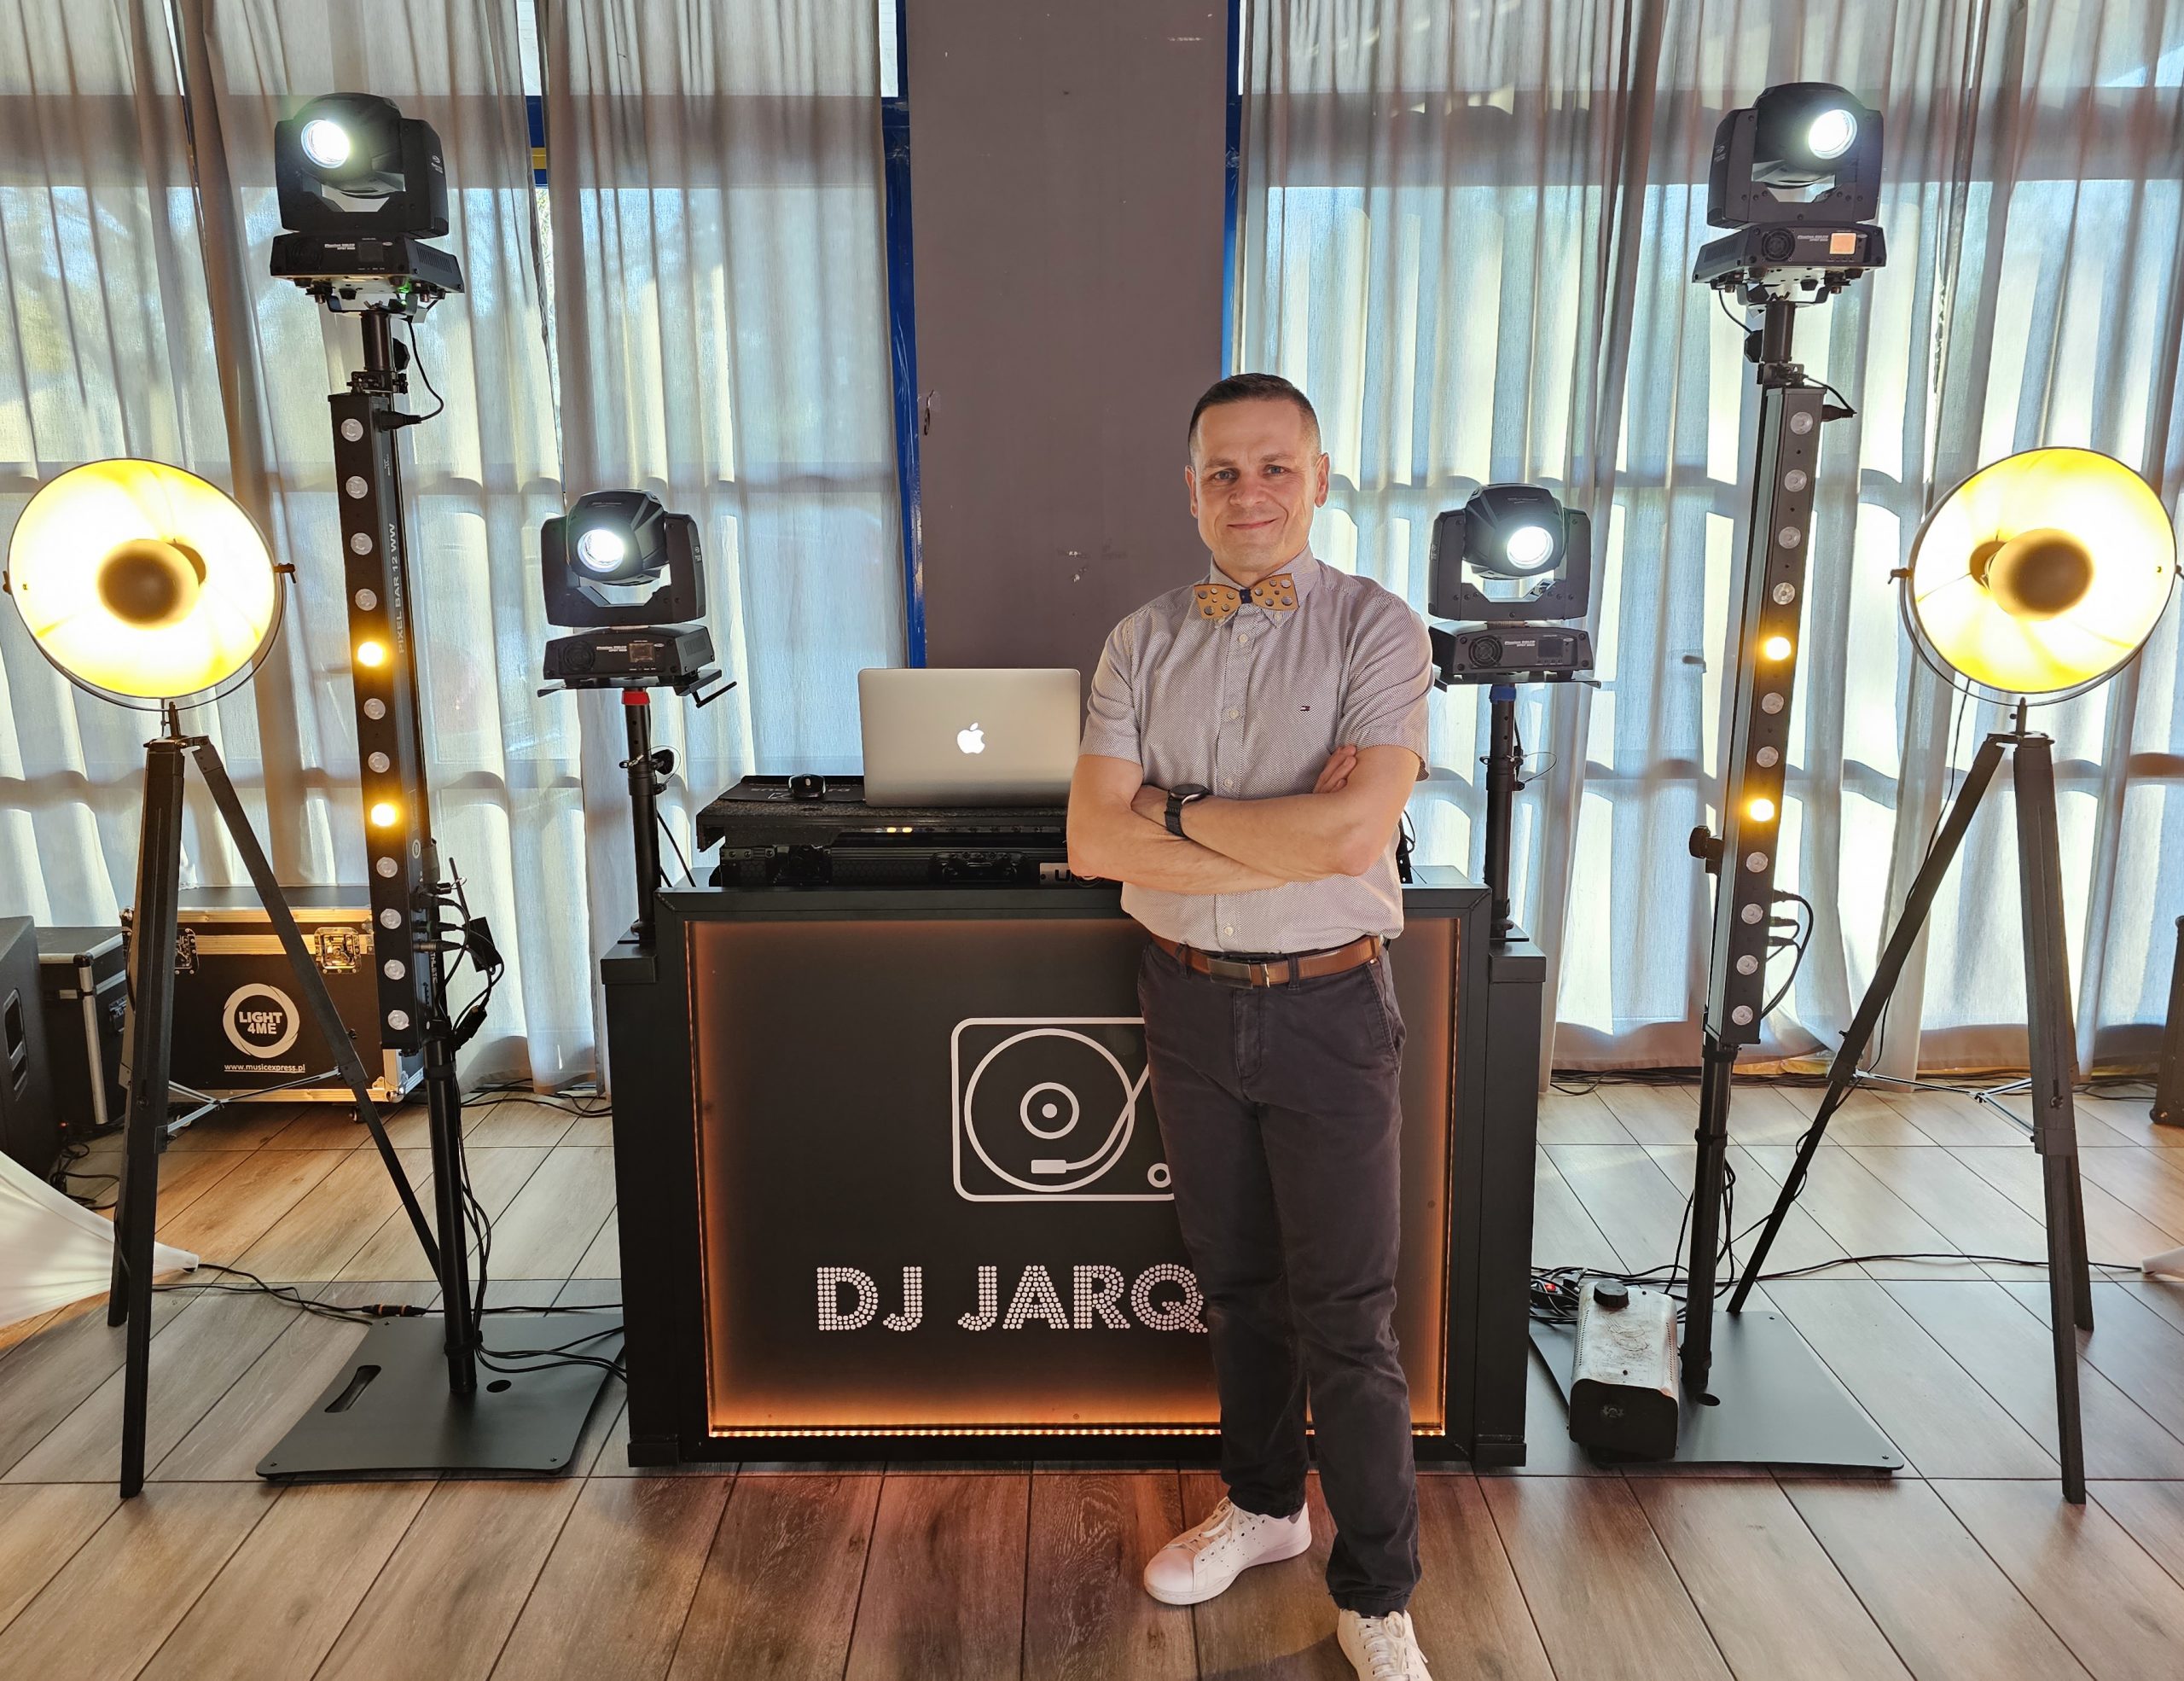 DJ JArqus